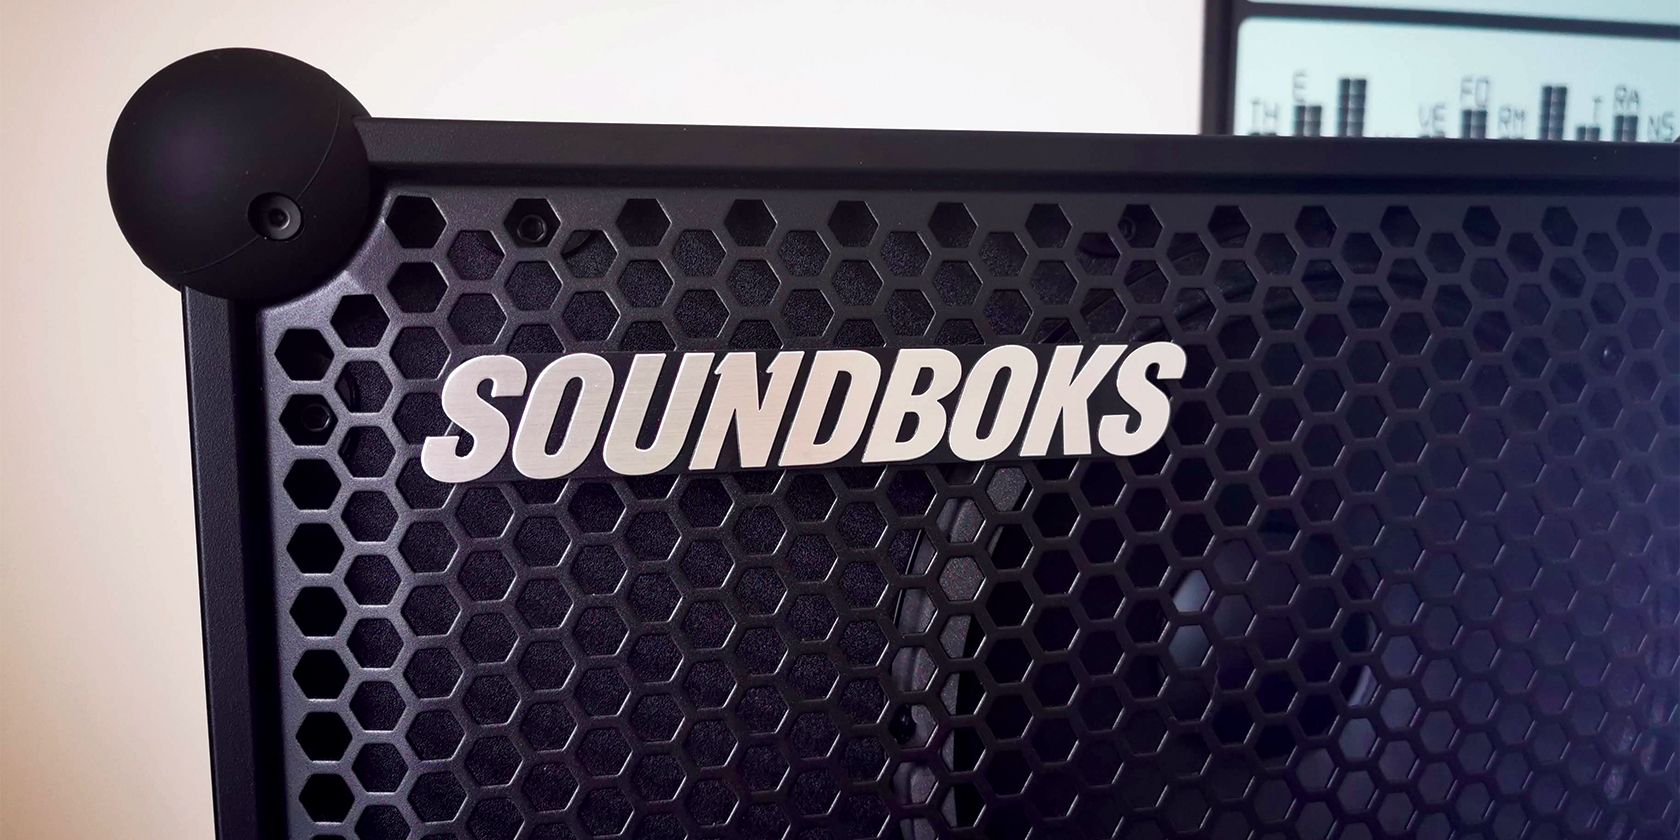 soundboks 3 logo on grill